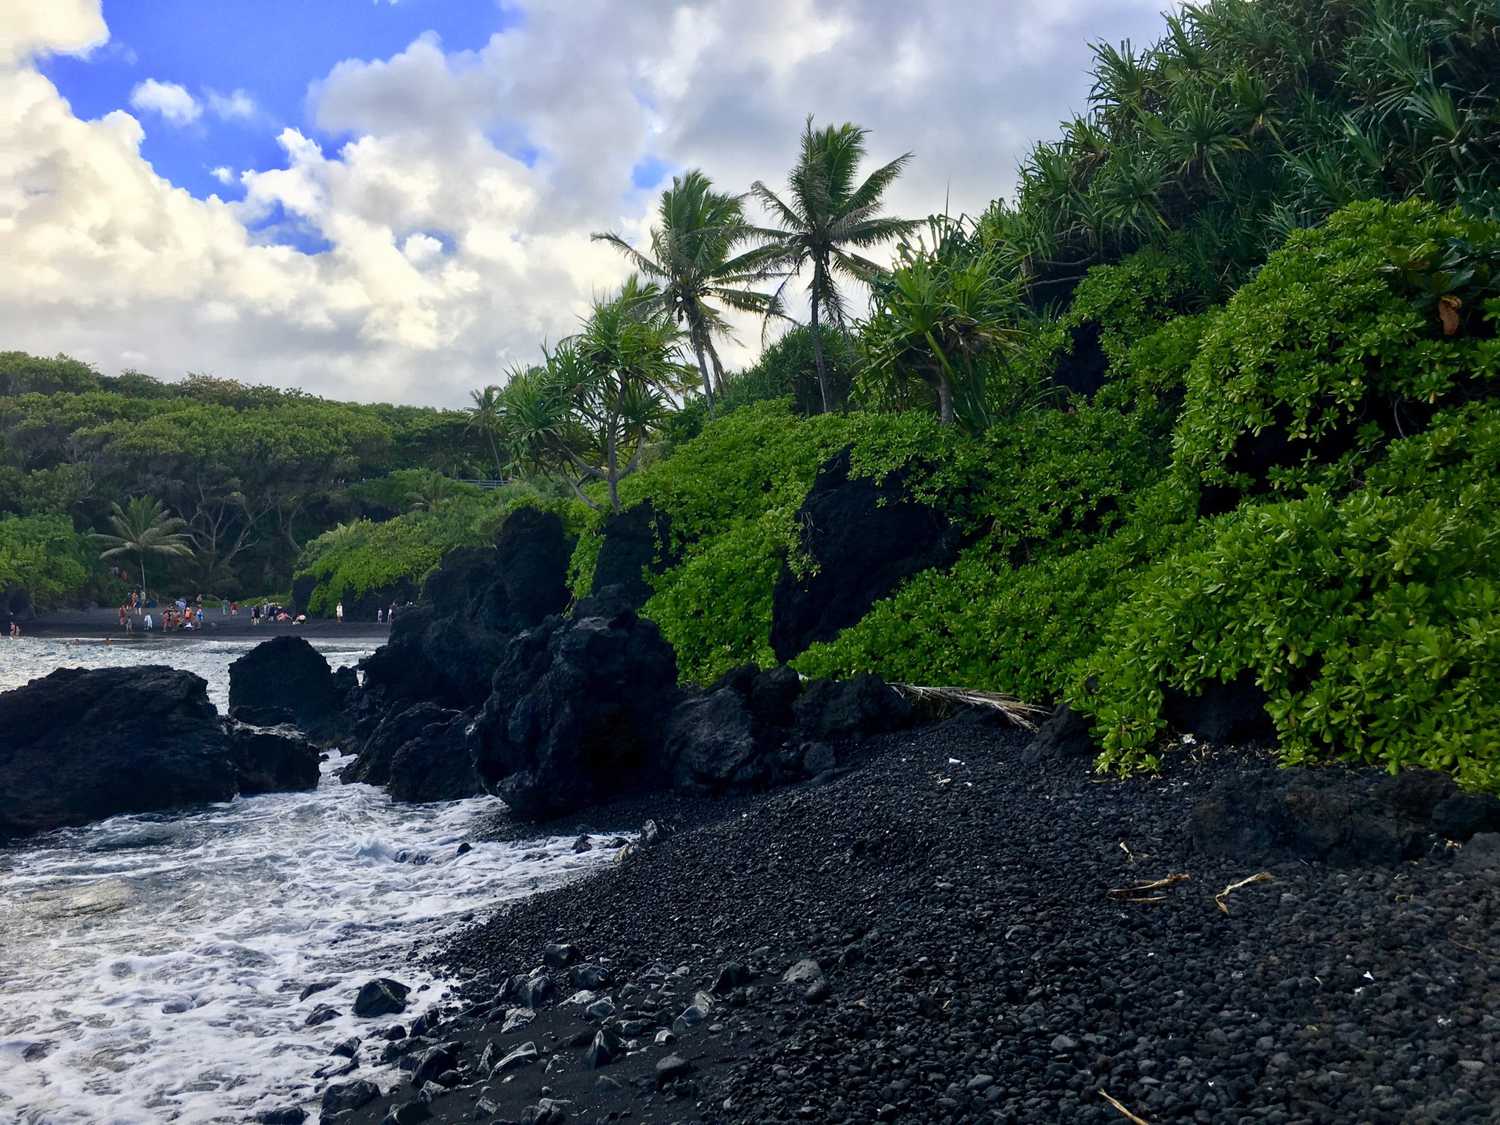 Beautiful view at Wai'anapanapa State Park on the road to Hana in Maui, Hawaii